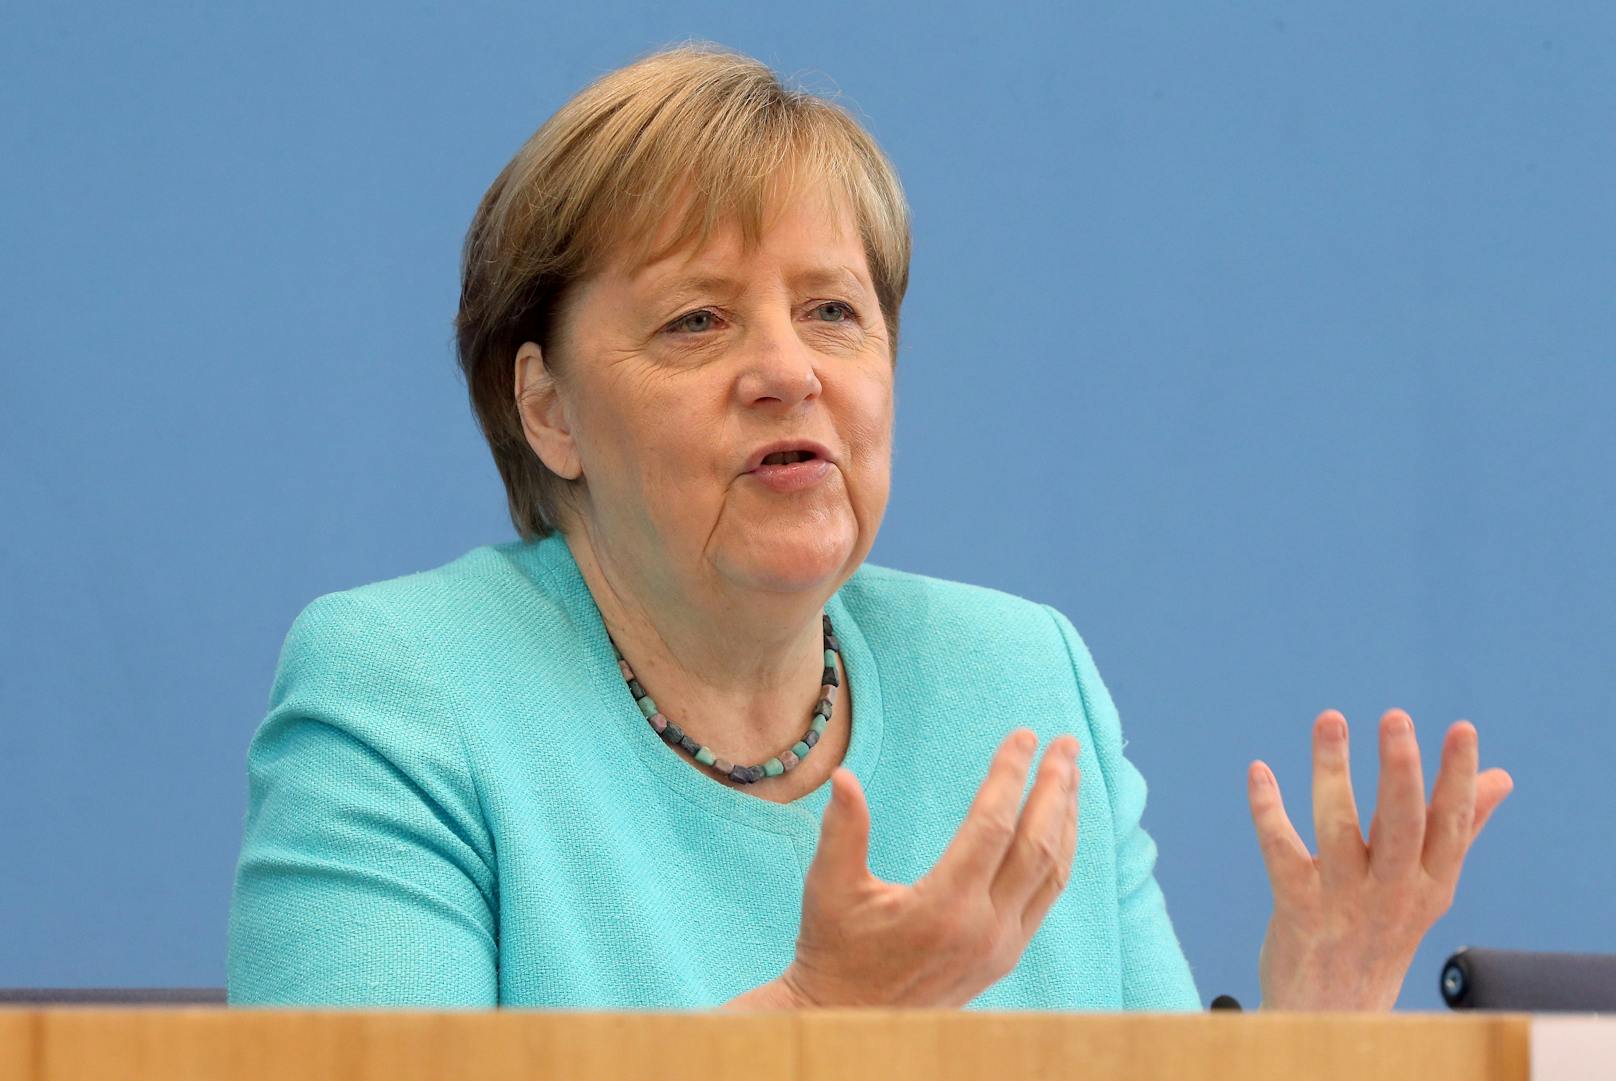 "Kein Verständnis" – erstes Merkel-Interview nach 2 Jahren